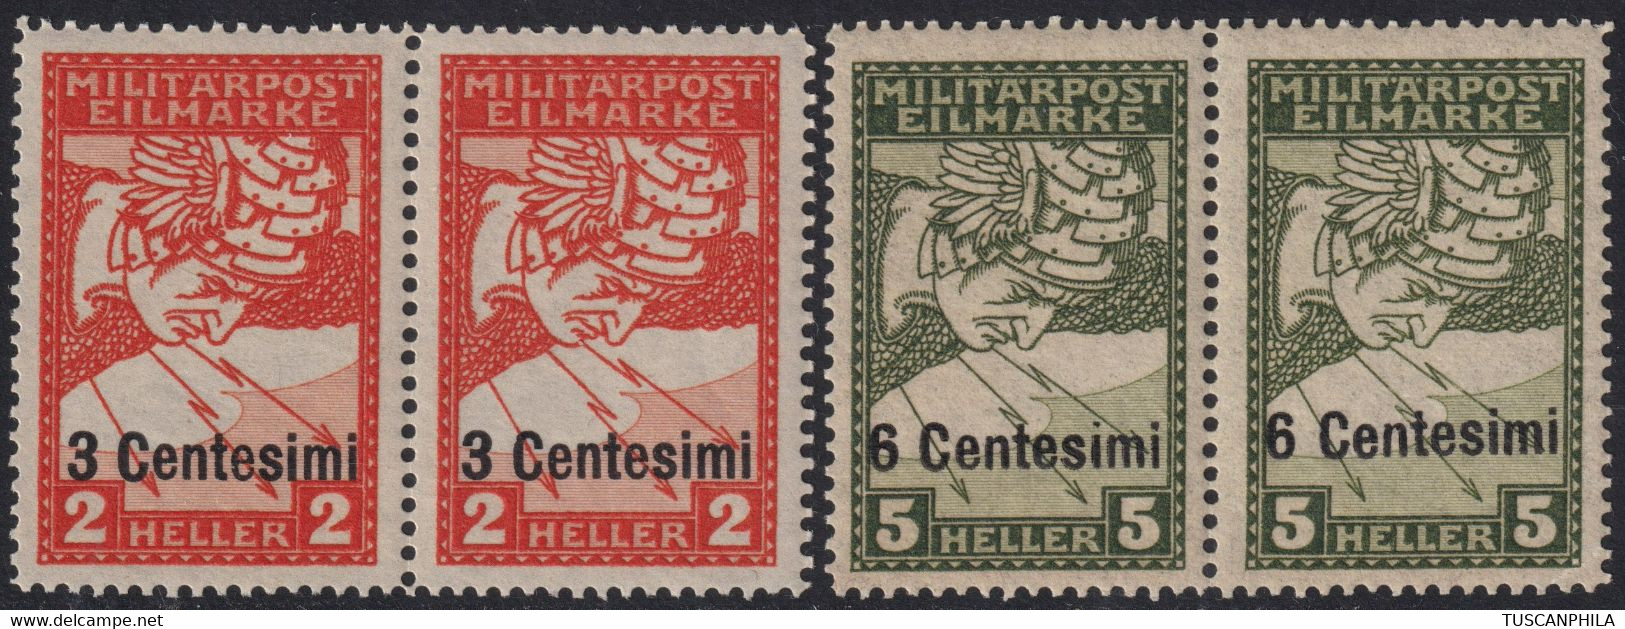 Espressi Serie Completa In Coppia Sass S.4 MNH** Cv 300 - Occupazione Austriaca